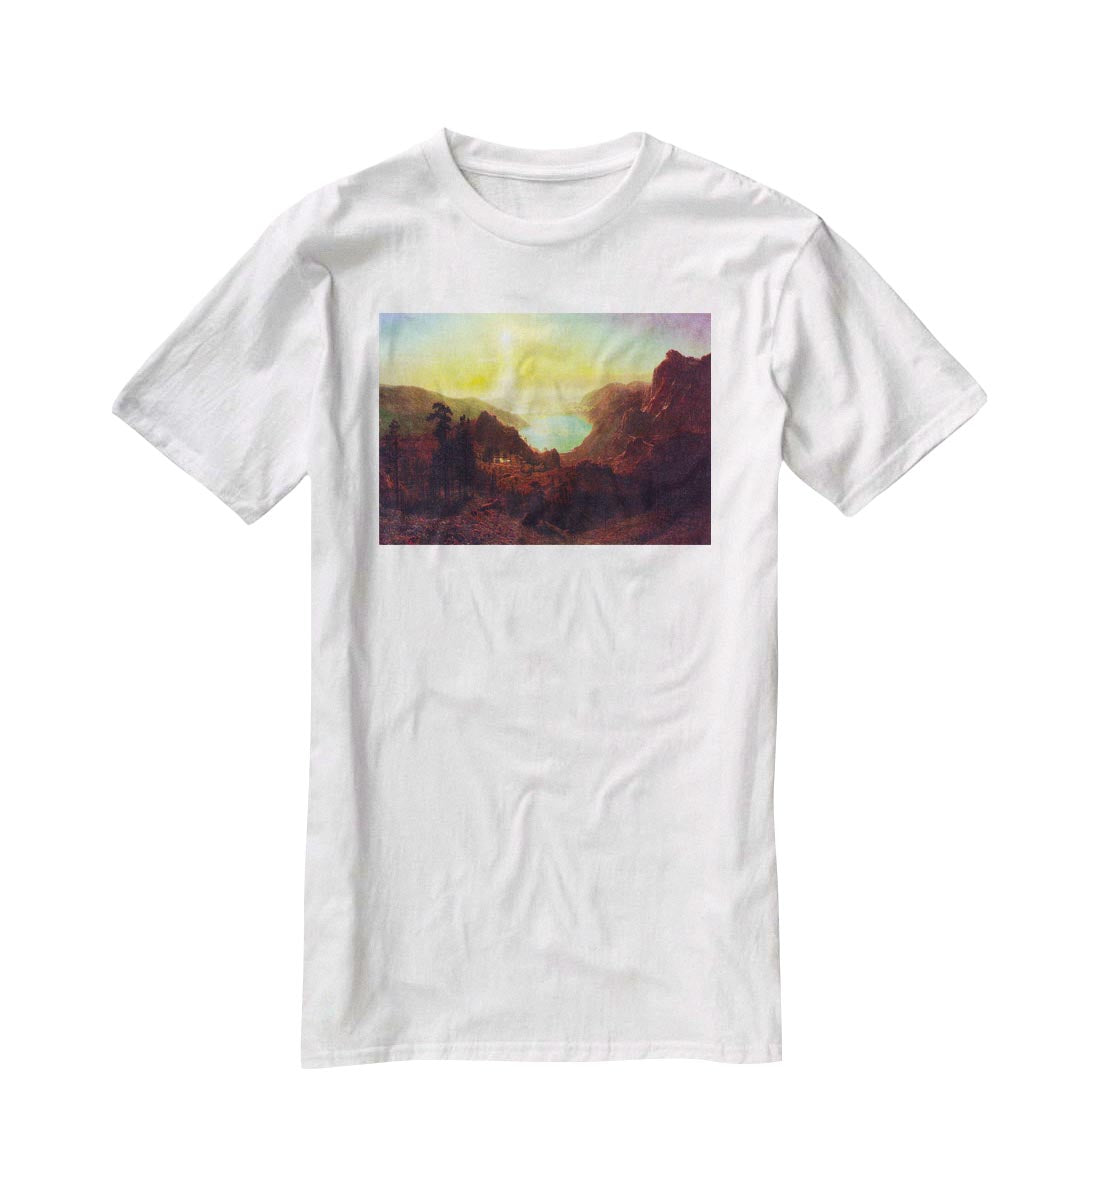 Donner Lake 2 by Bierstadt T-Shirt - Canvas Art Rocks - 5